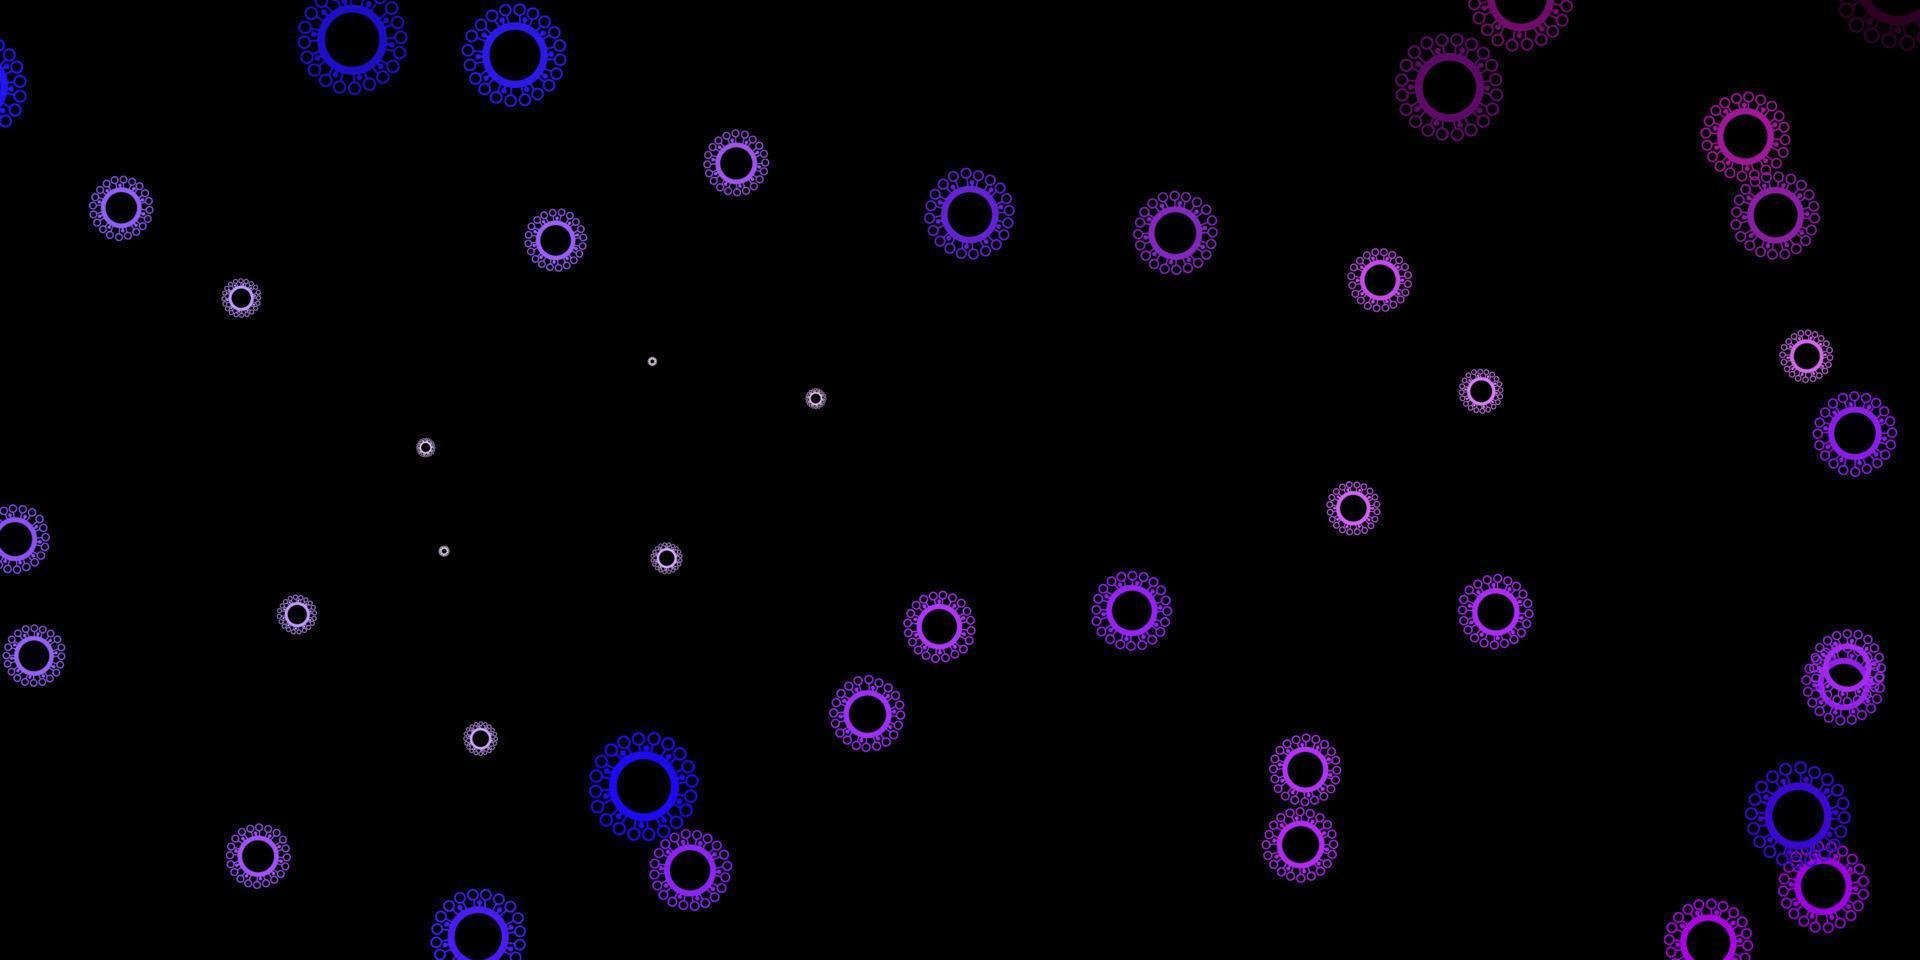 sfondo vettoriale viola scuro con simboli di virus.